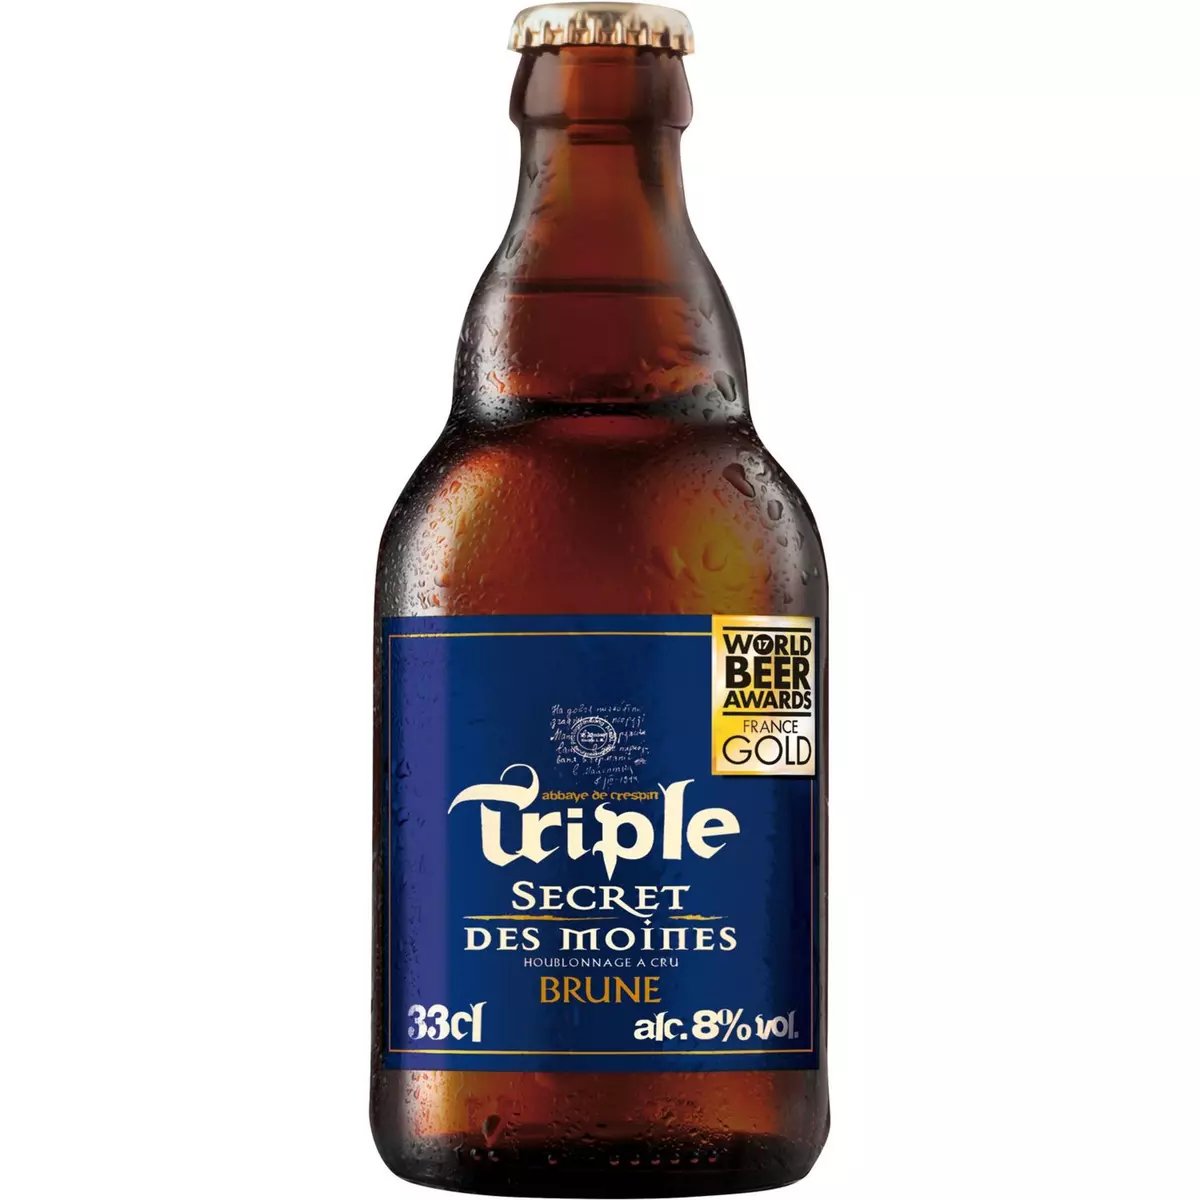 SECRET DES MOINES Bière brune 8% bouteille 33cl